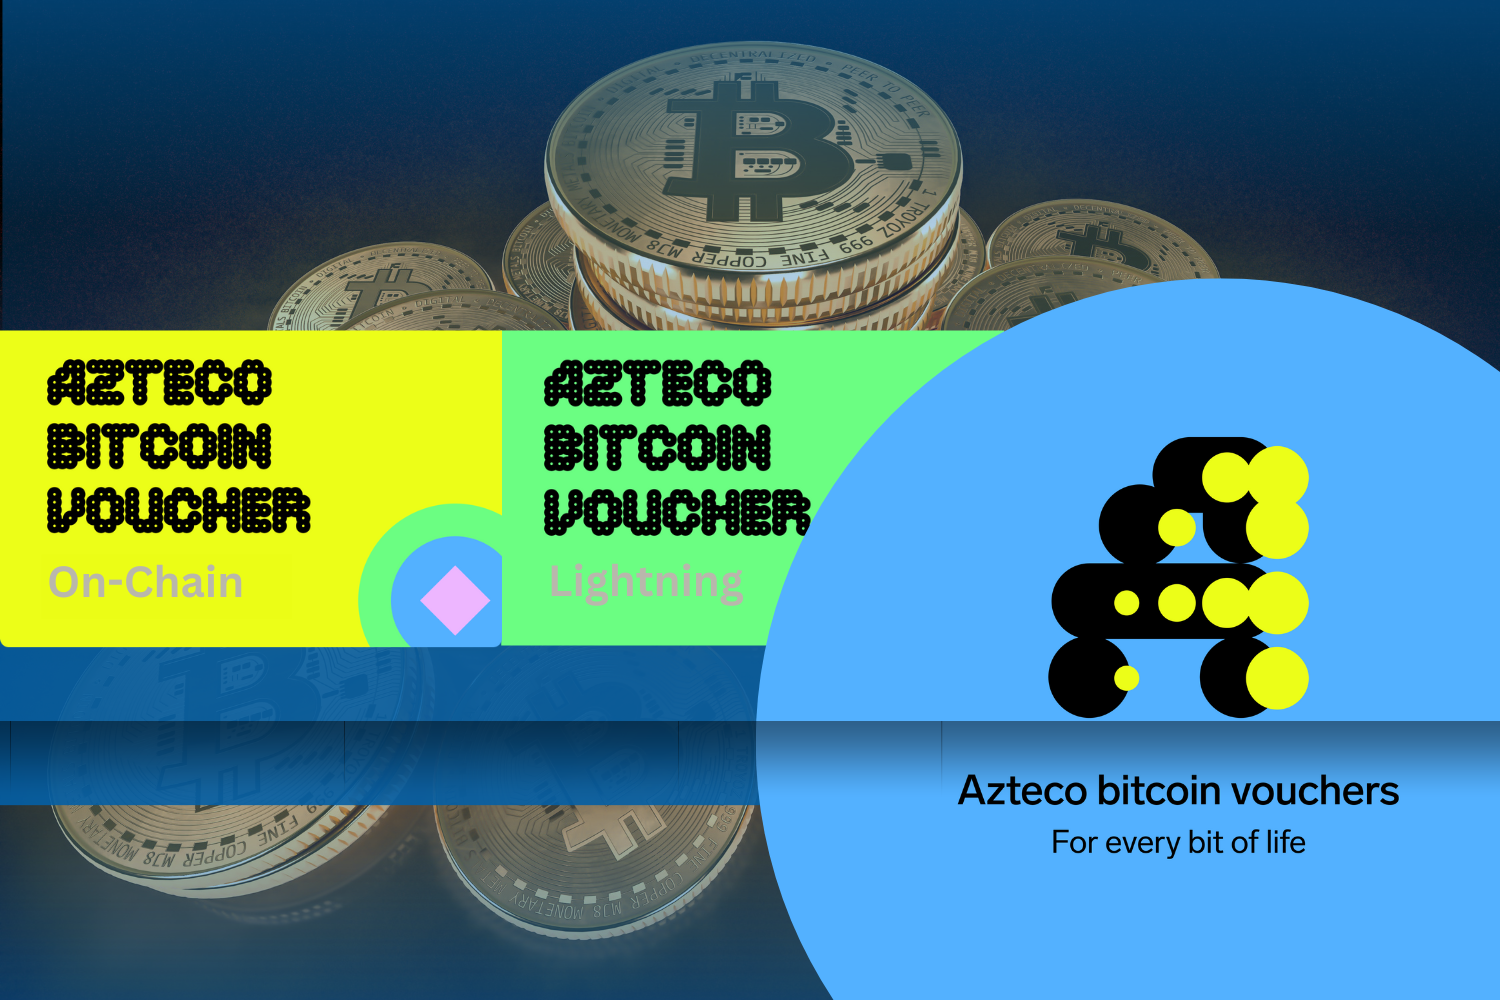 Azteco Bitcoin Voucher